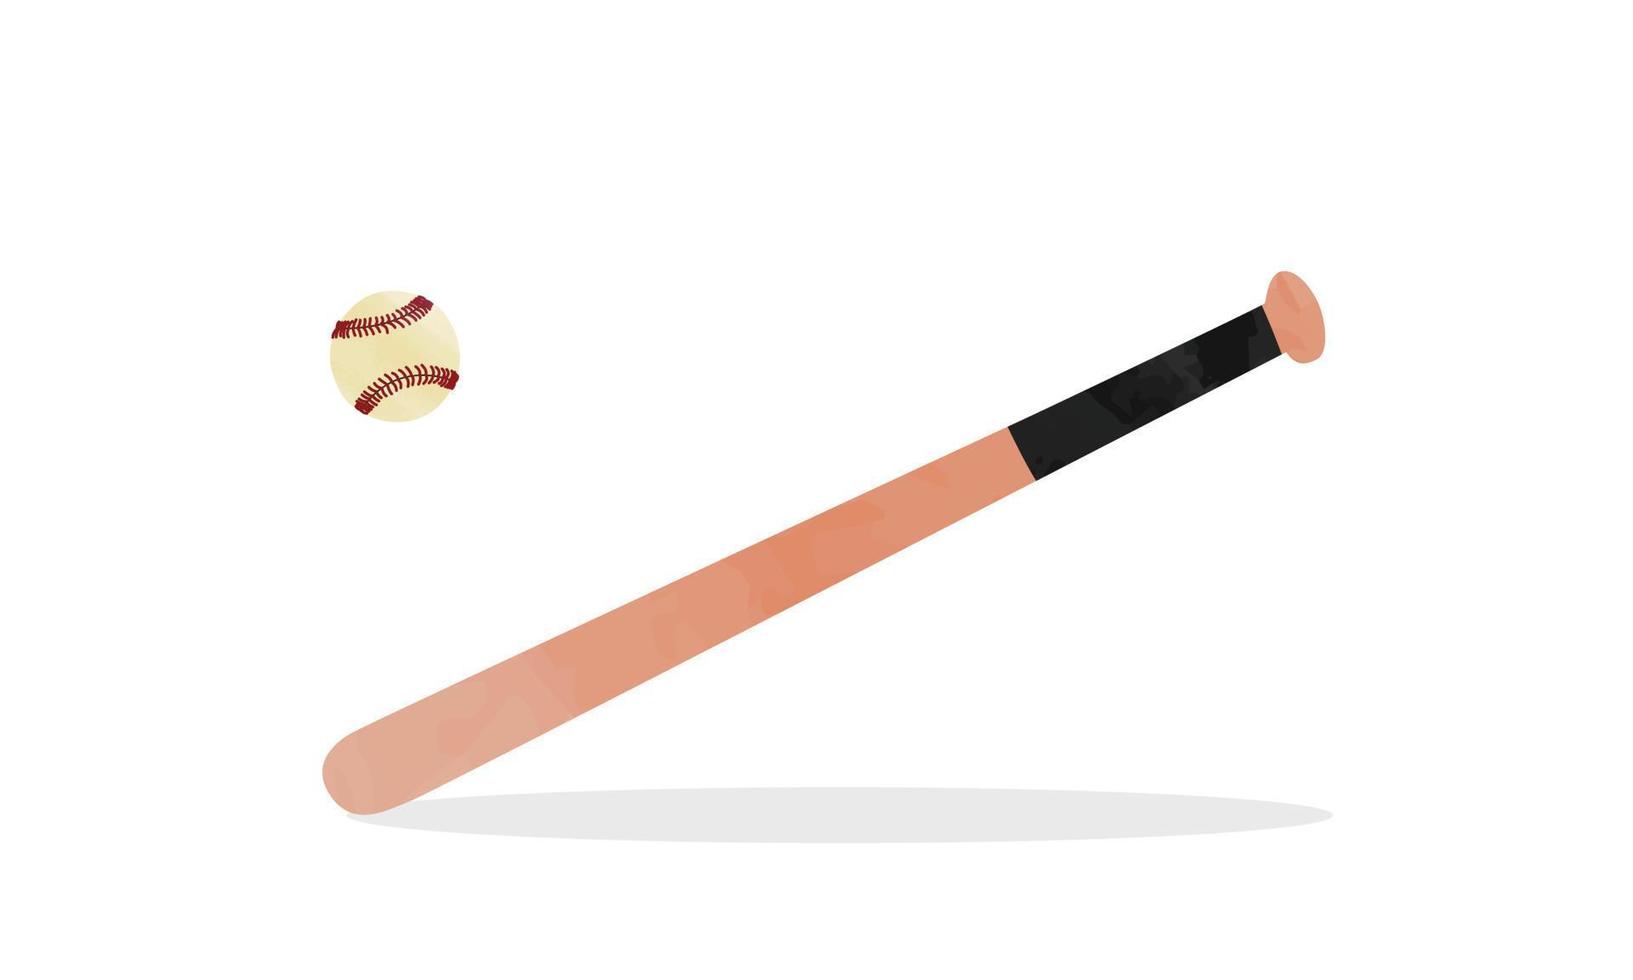 Baseballschläger-Clipart. einfache hölzerne Baseballschläger-Aquarellart-Vektorillustration lokalisiert auf weißem Hintergrund. Holz Baseballschläger Cartoon handgezeichneten Stil. Baseballschläger-Vektordesign vektor